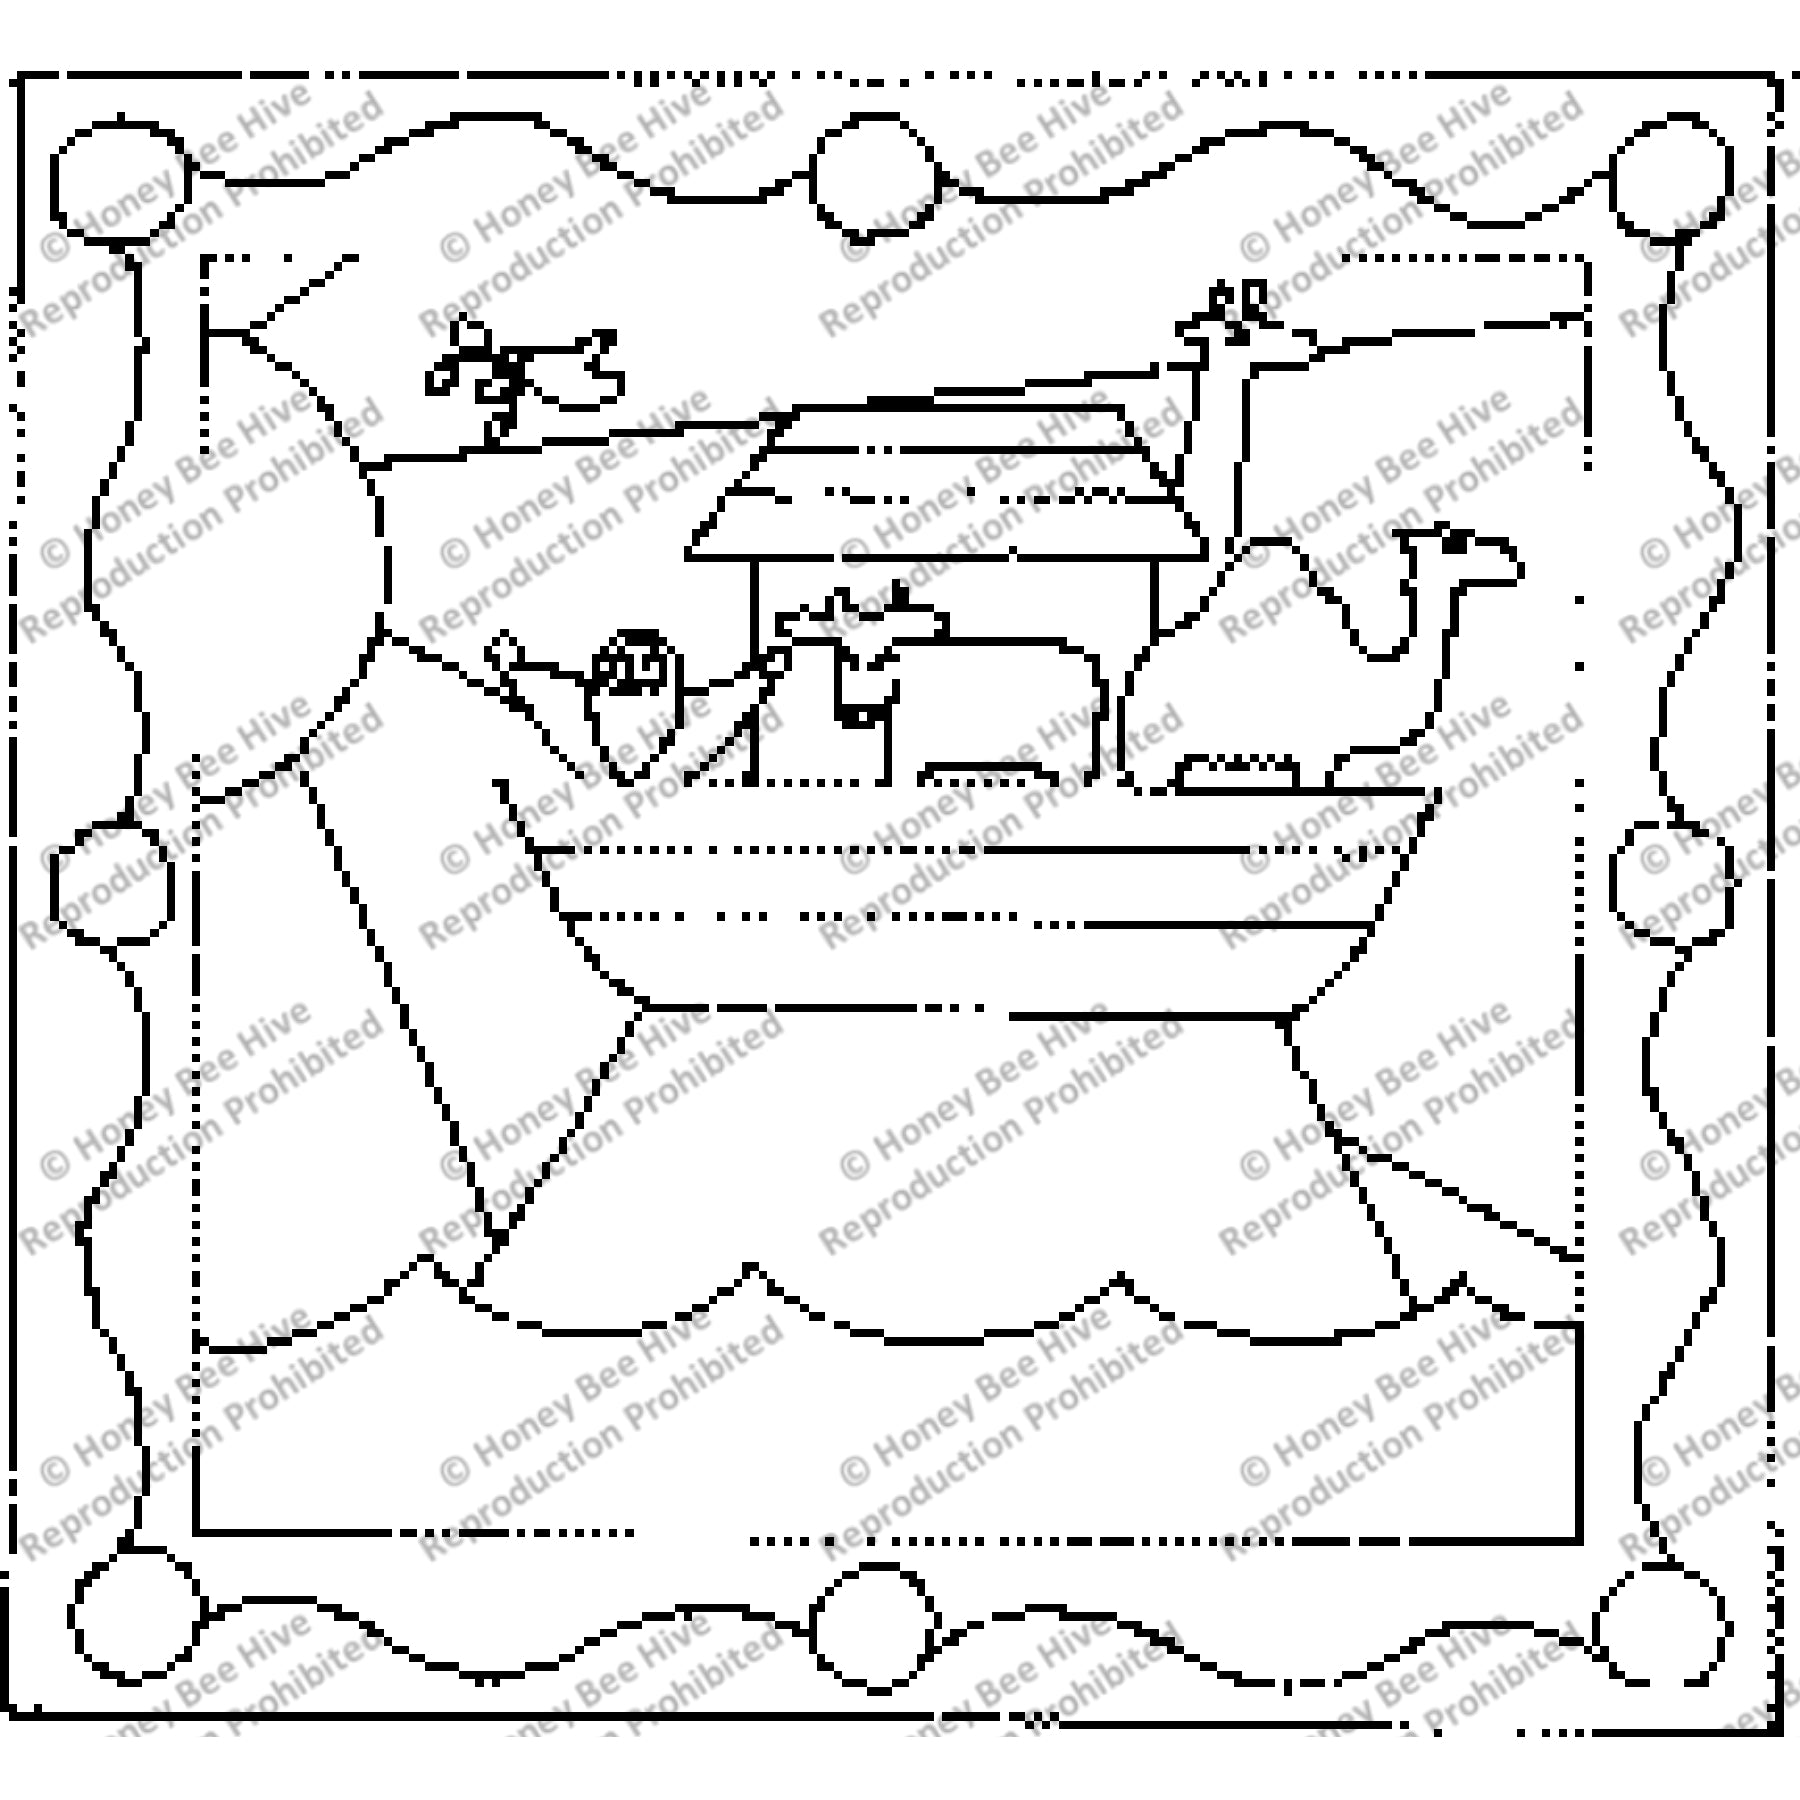 Ark's Landing, rug hooking pattern